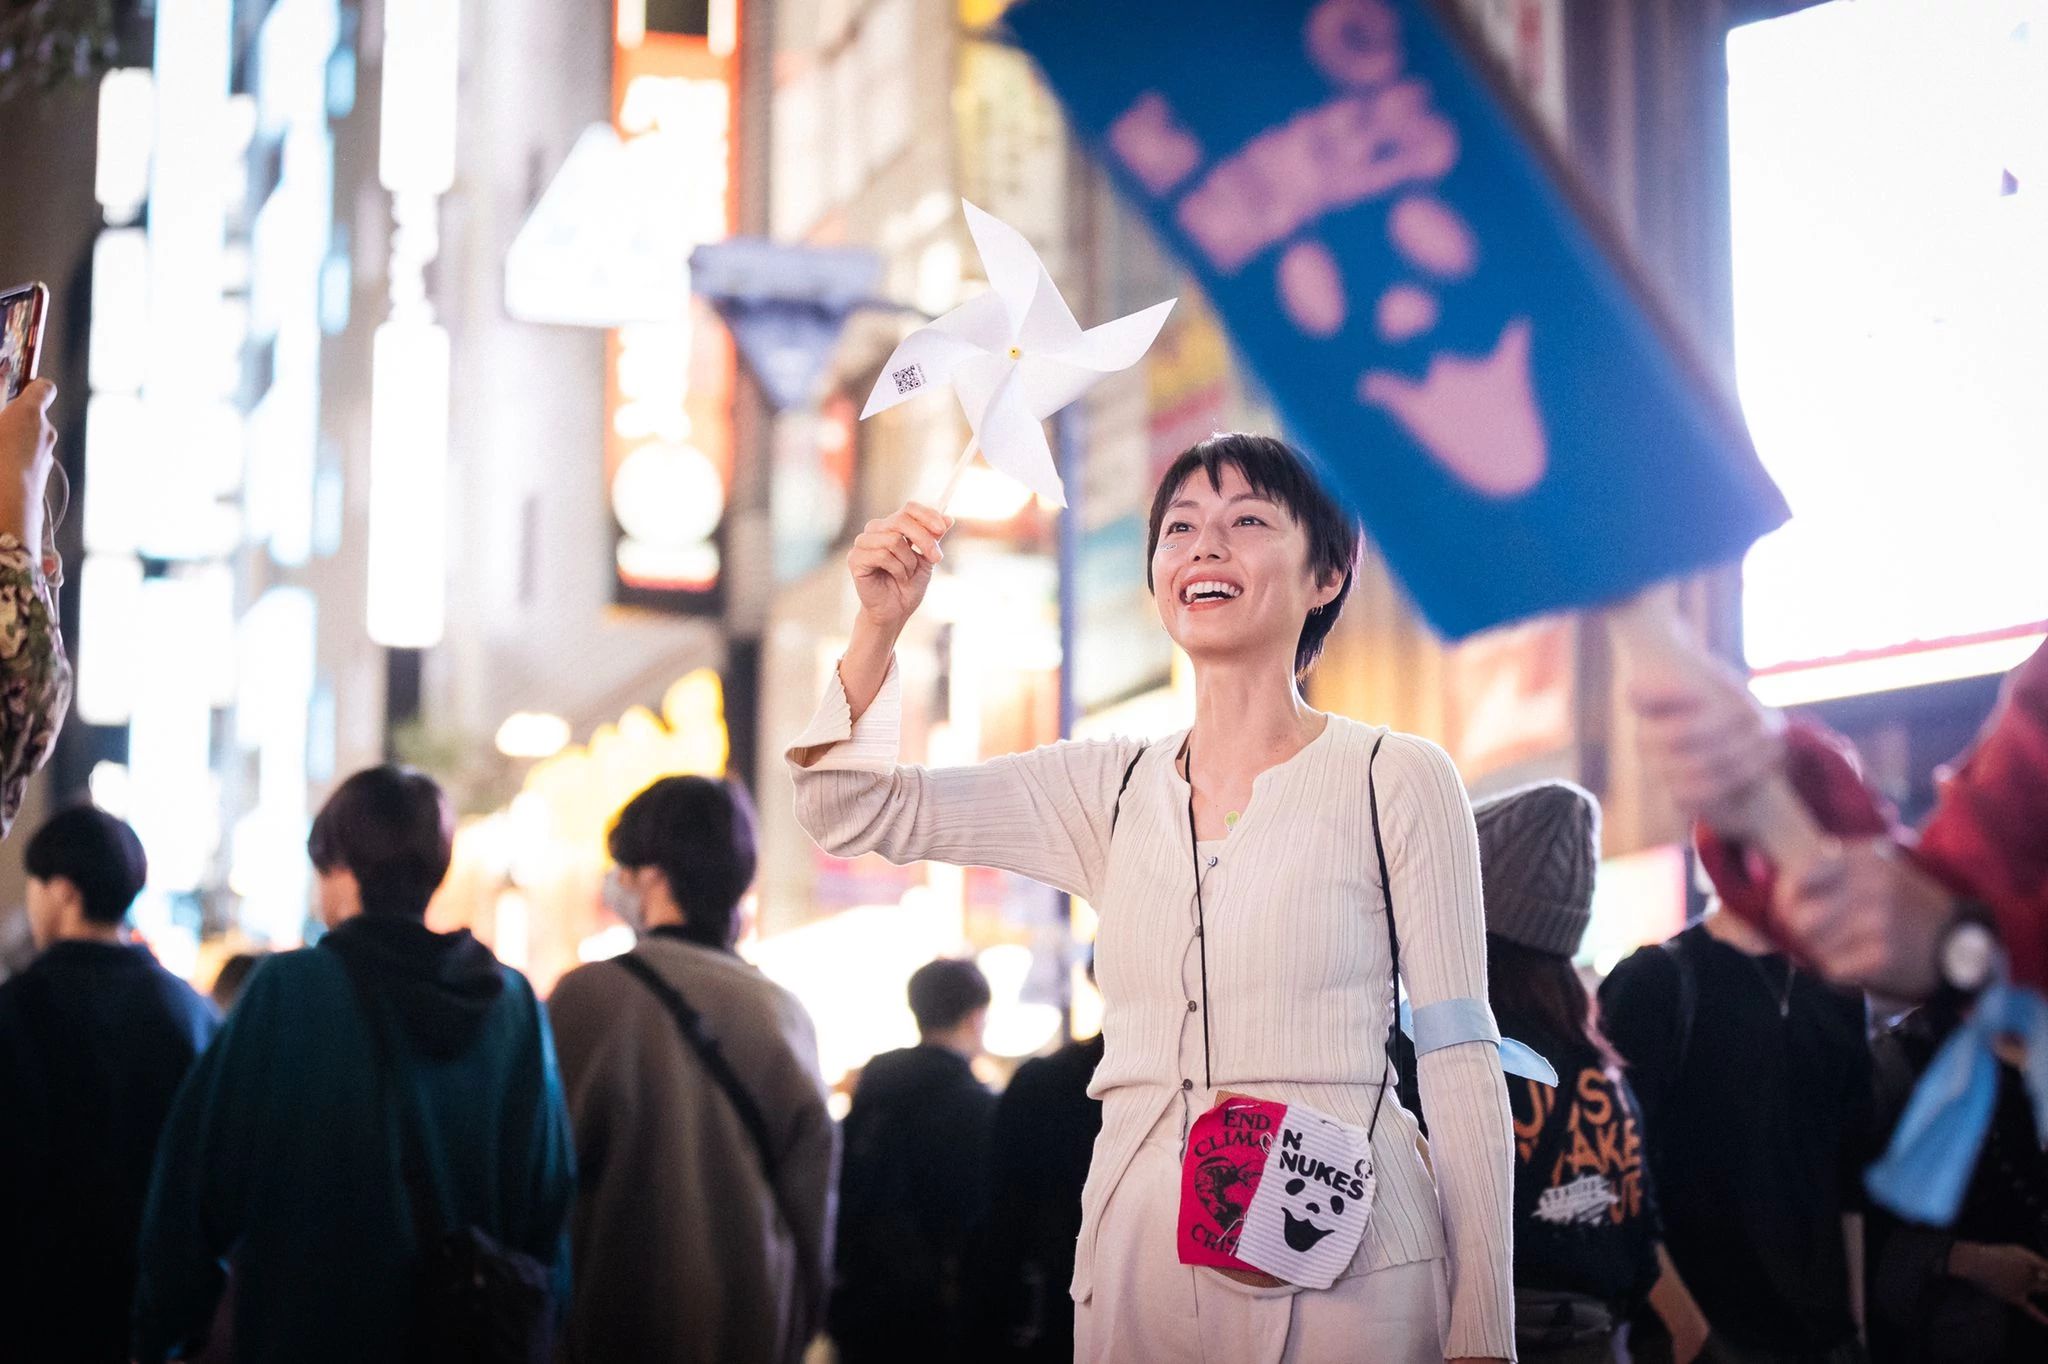 Japonya, Tokyo, 3 Kasım: 800'den fazla coşkulu aktivist Shinjuku İstasyonu'nda bir araya gelerek şehrin kalbinde yankılanan güçlü bir iklim şarkısında seslerini birleştirdi. Bu eylem, Geleceğimizi İstiyoruz örgütü ile işbirliği içerisinde 350 Japonya tarafından organize edildi. Fotoğraf: Jun Yokoyama